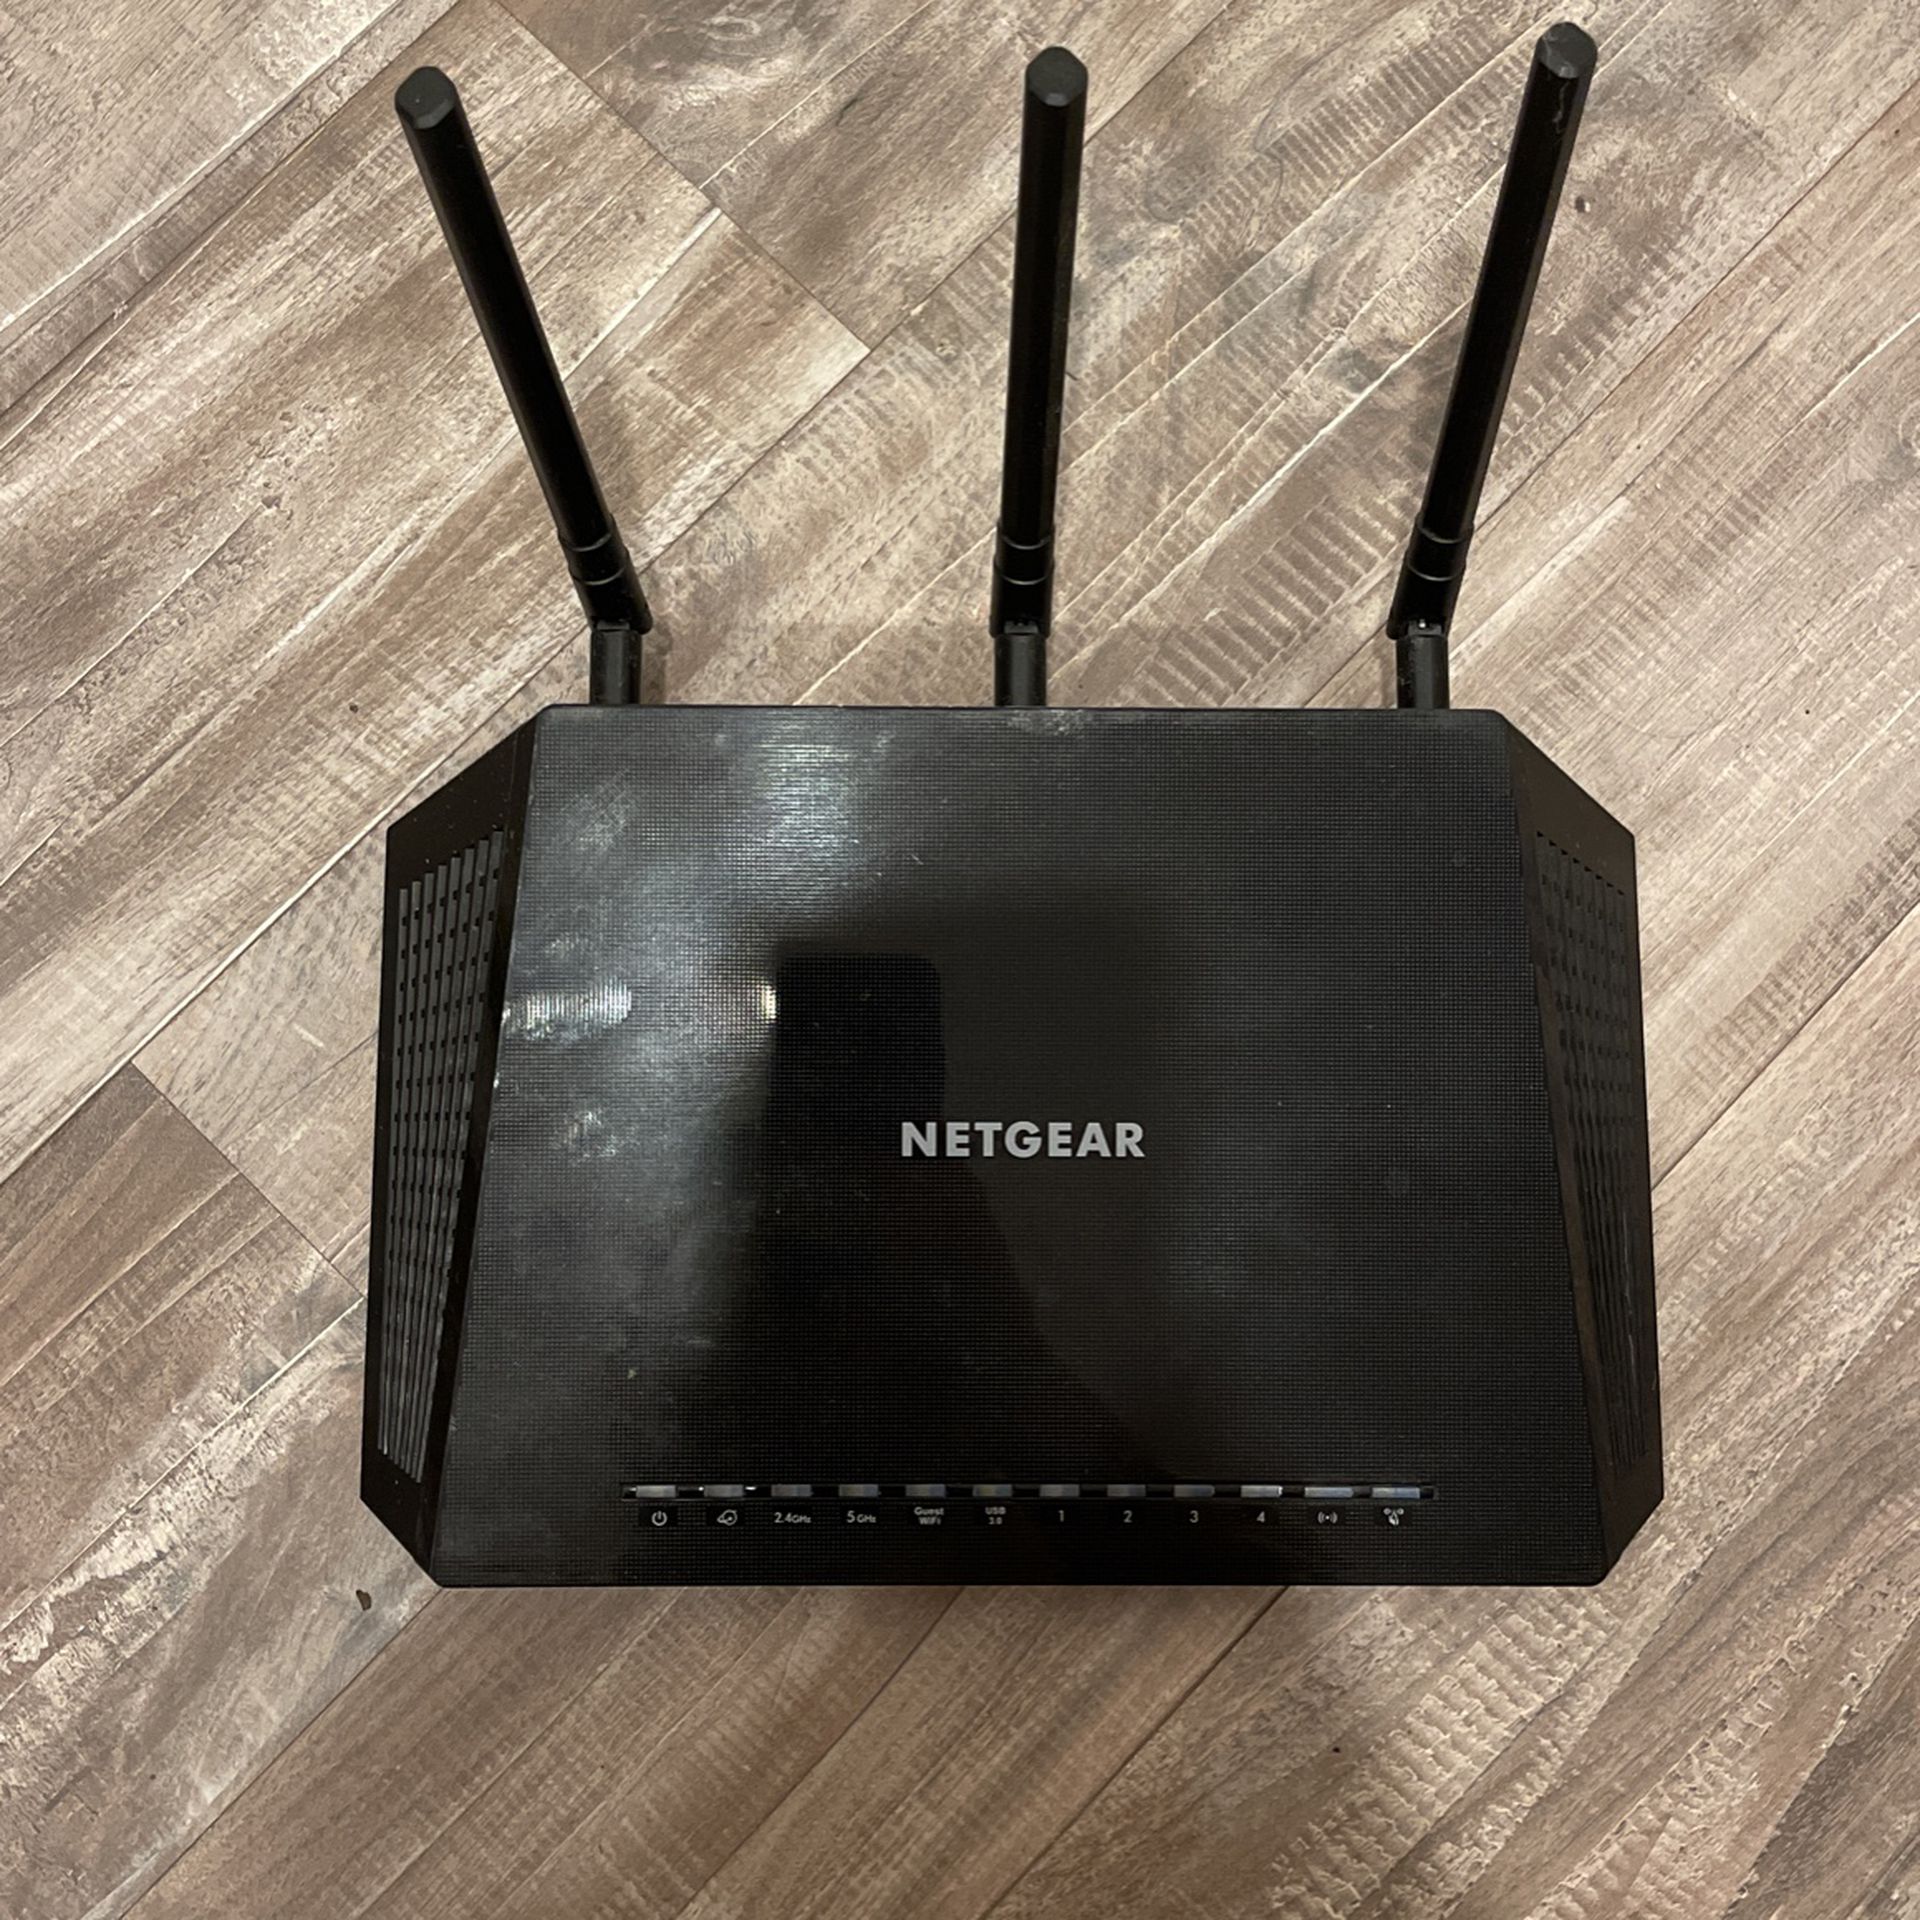 Netgear Nighthawk R6700v3 Wifi router